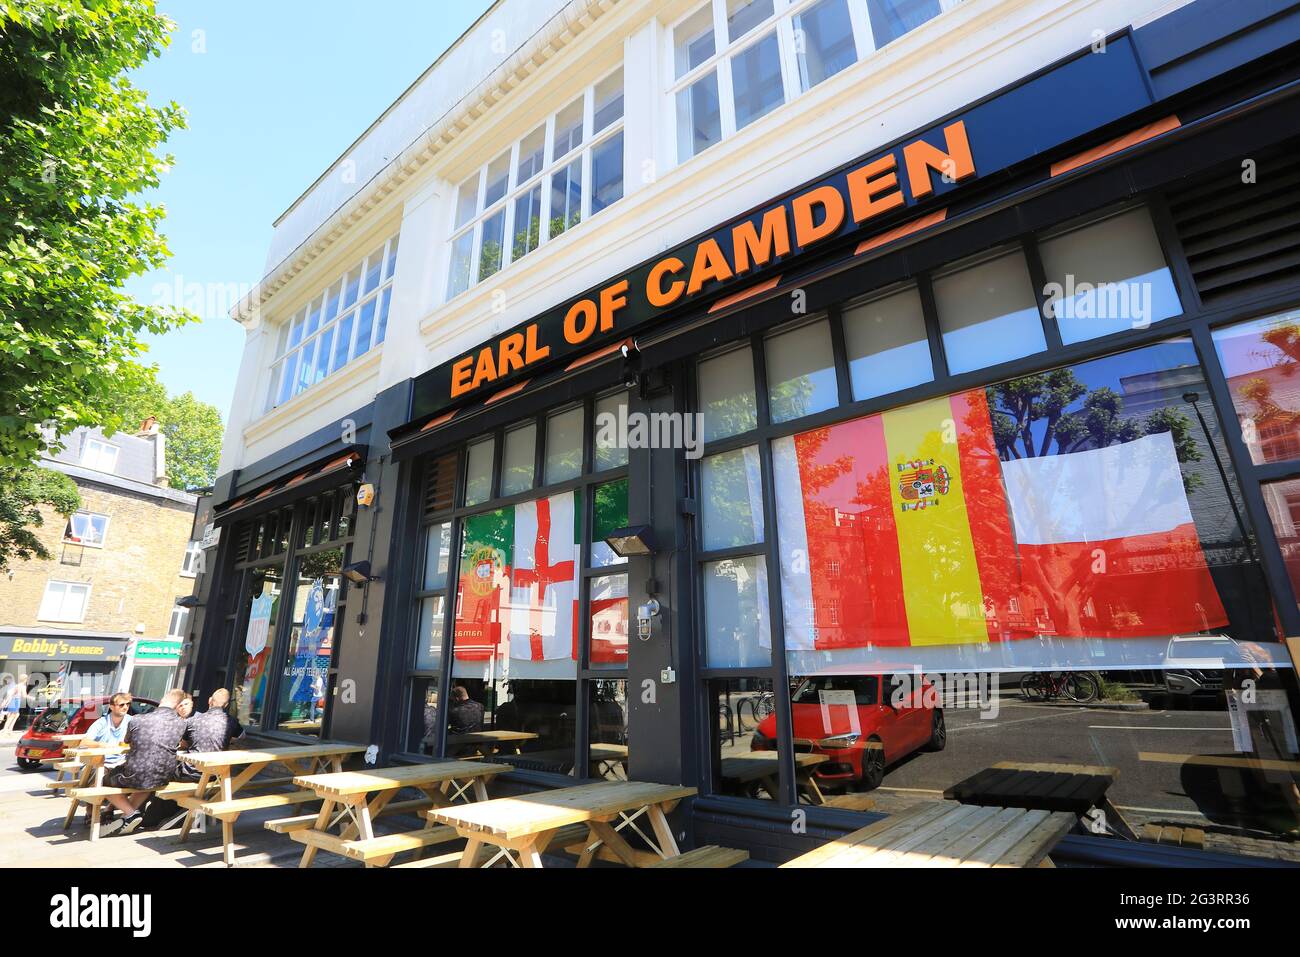 Bandiere europee nelle finestre del pub Earl of Camden, per il torneo di calcio Euro, giugno 2021, Londra, Regno Unito Foto Stock